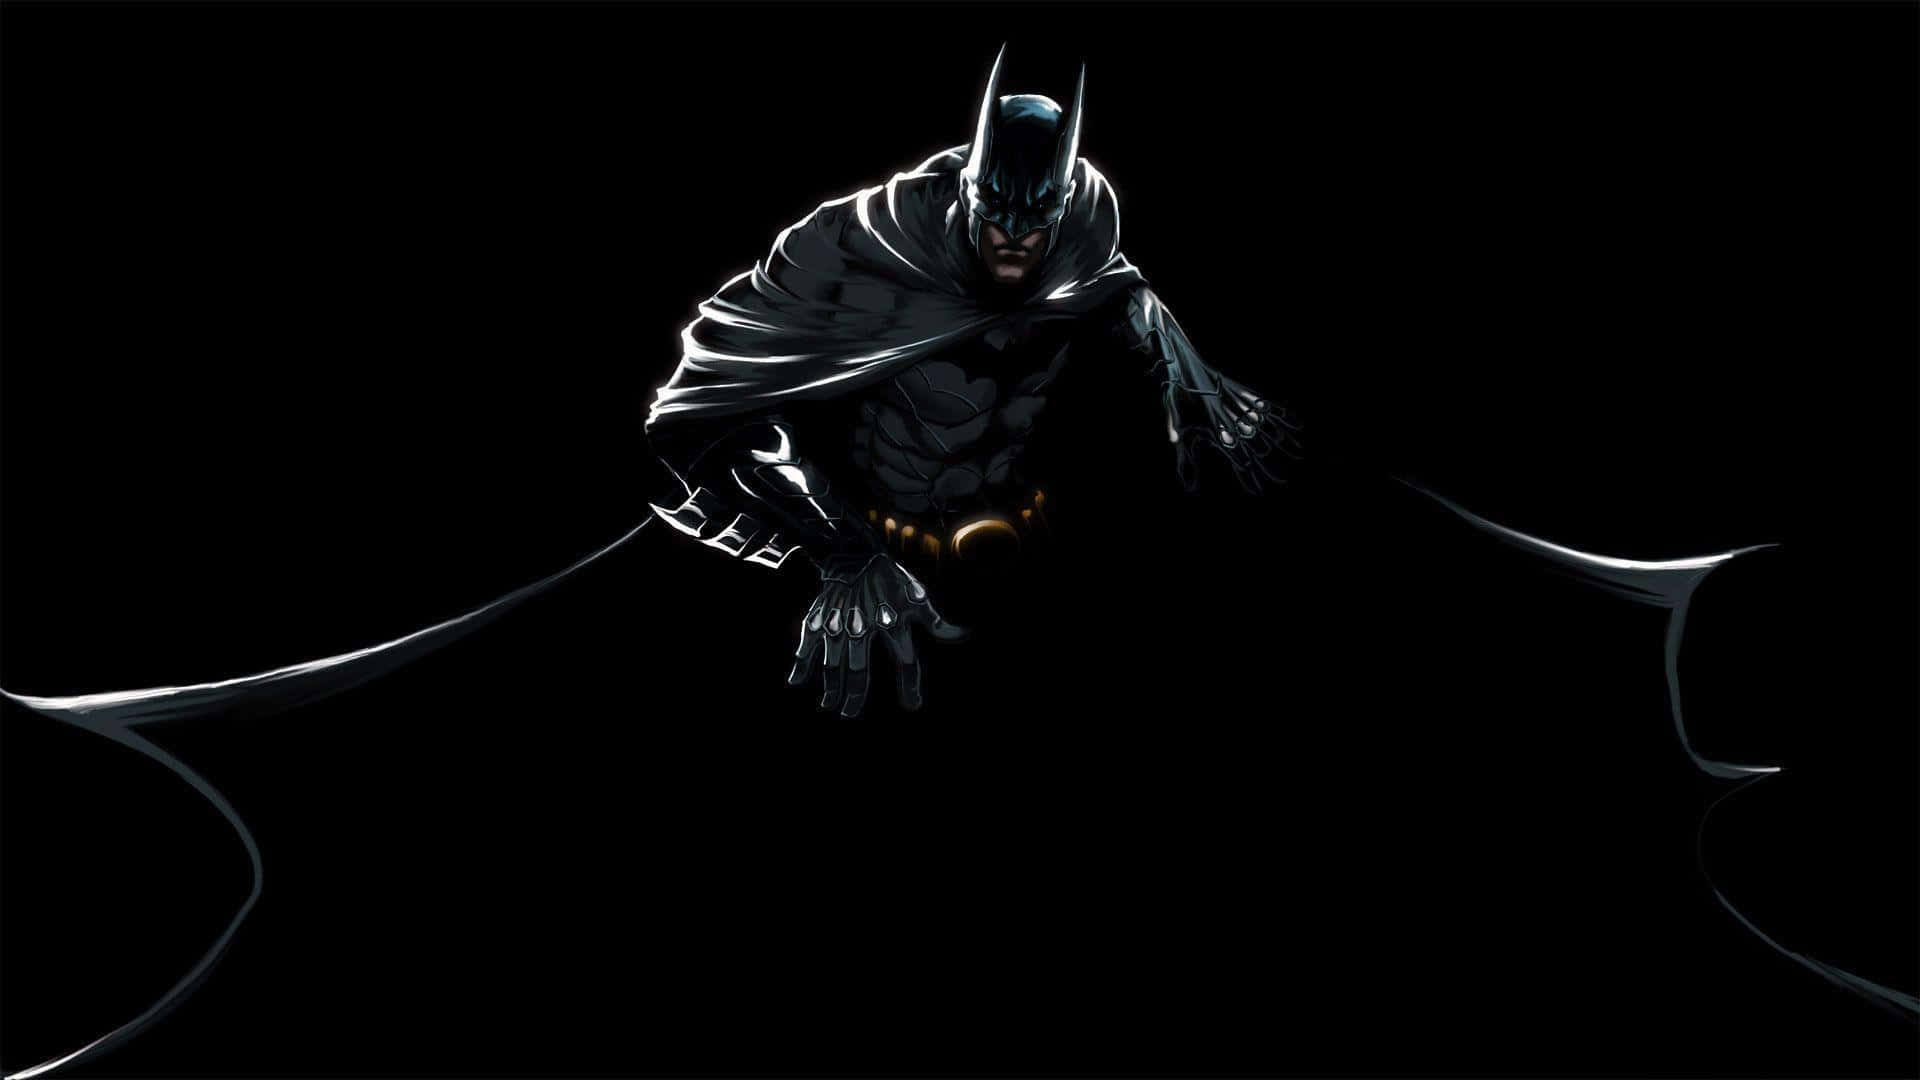 "The Dark Knight" Wallpaper